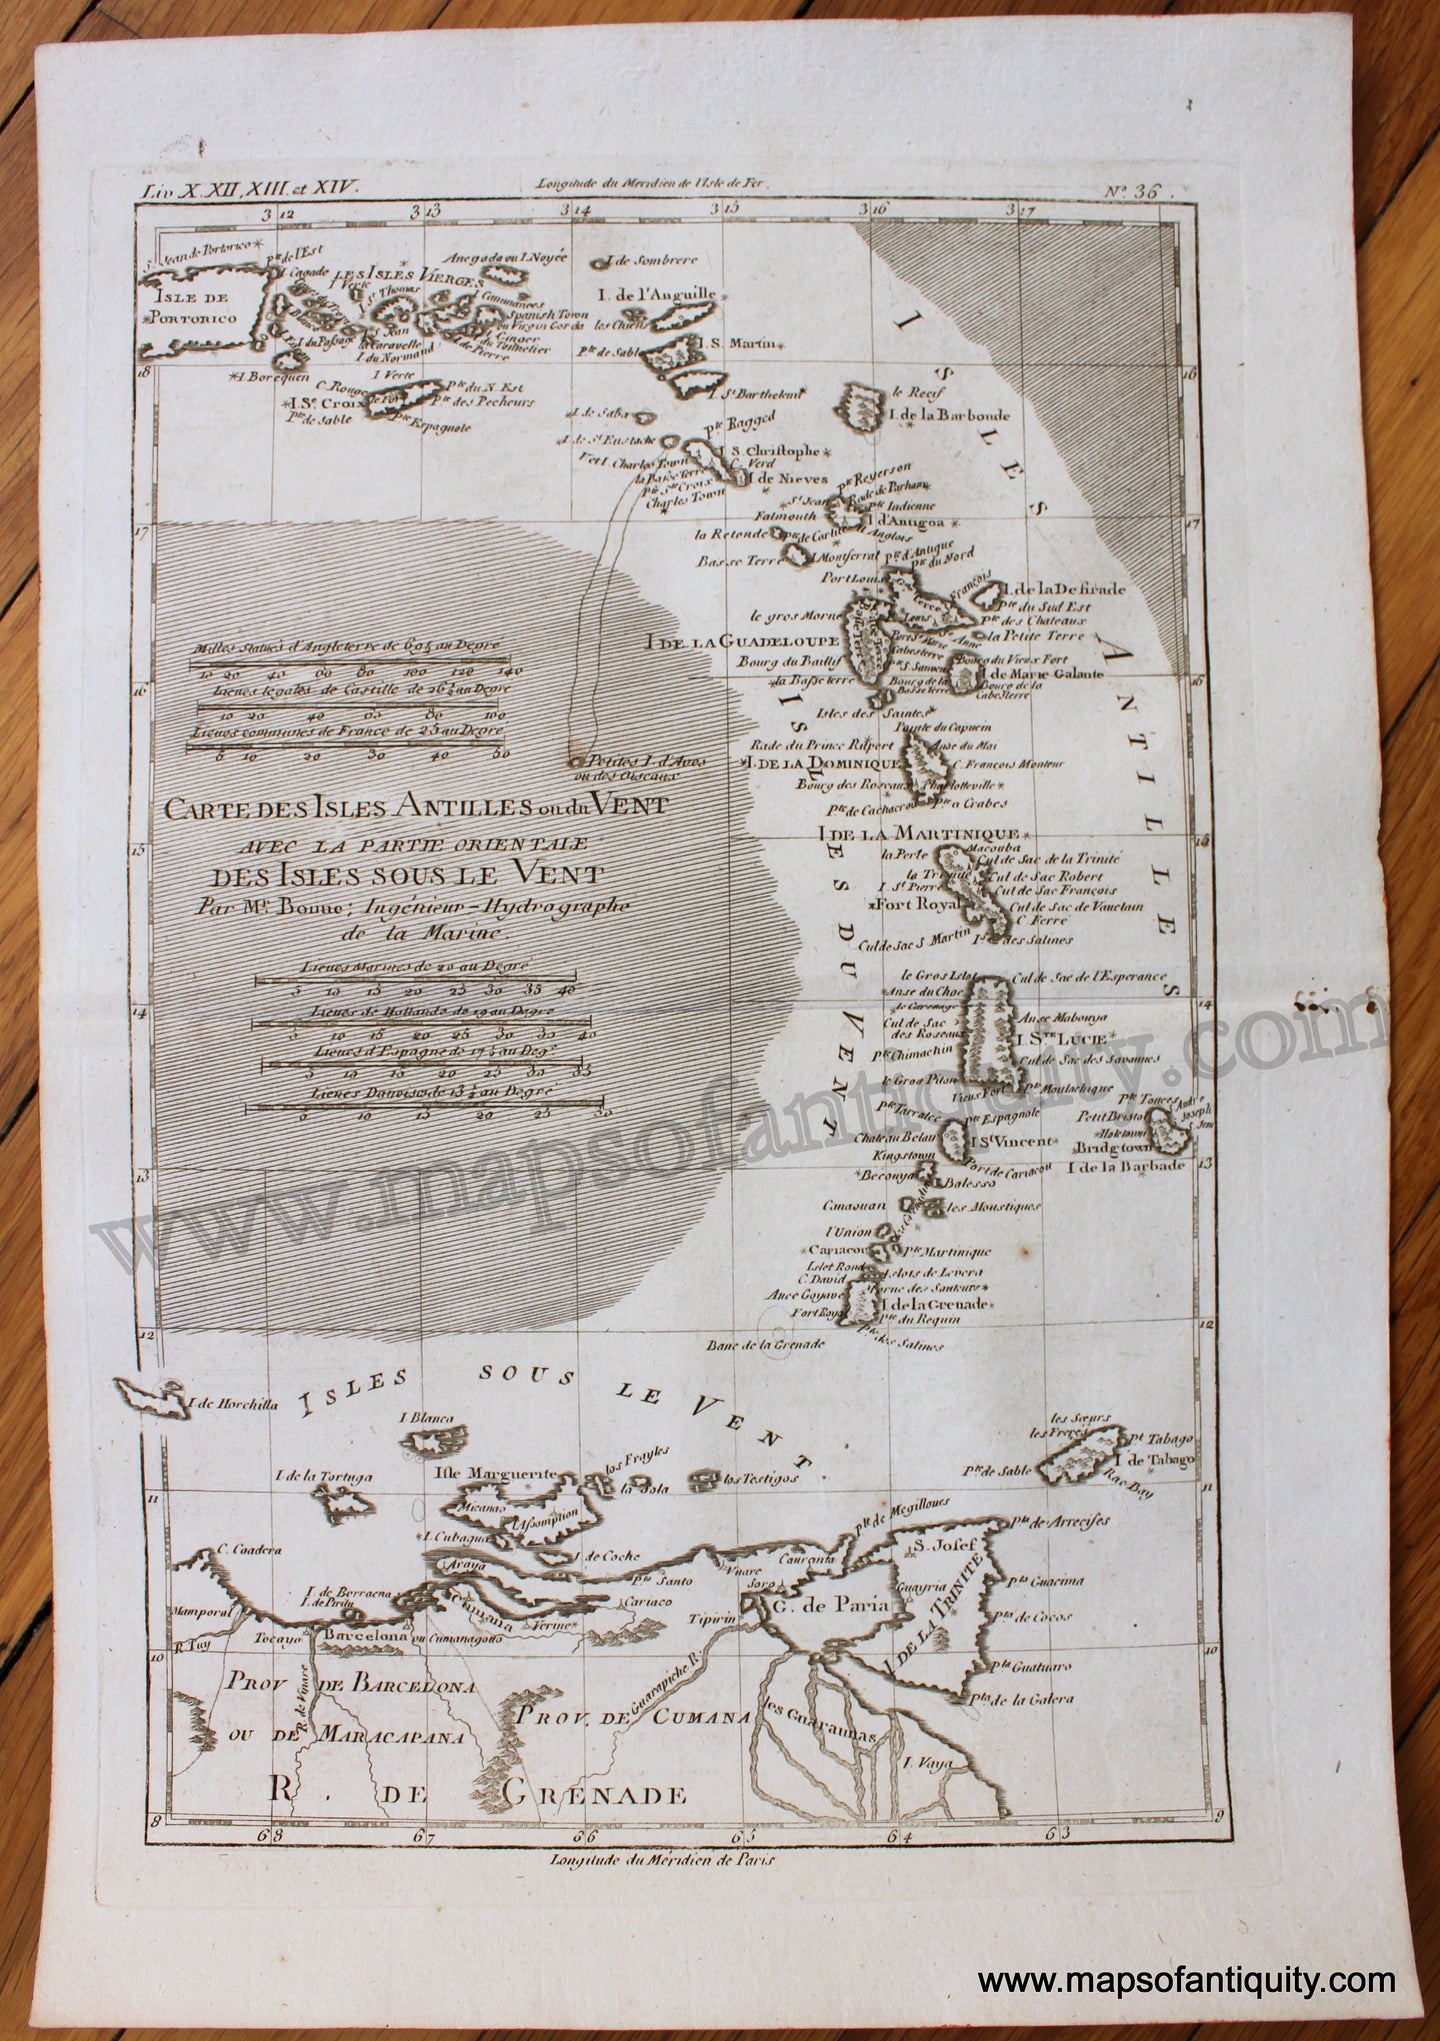 Antique-Early-Map-Carte-des-Isles-Antilles-ou-du-Vent-avec-la-Partie-Orientale-des-Isles-sous-le-Vent-Caribbean-Bonne-1780-West-Indies-Windward-Leeward-Isles-1780s-1700s-Late-18th-Century-Maps-of-Antiquity